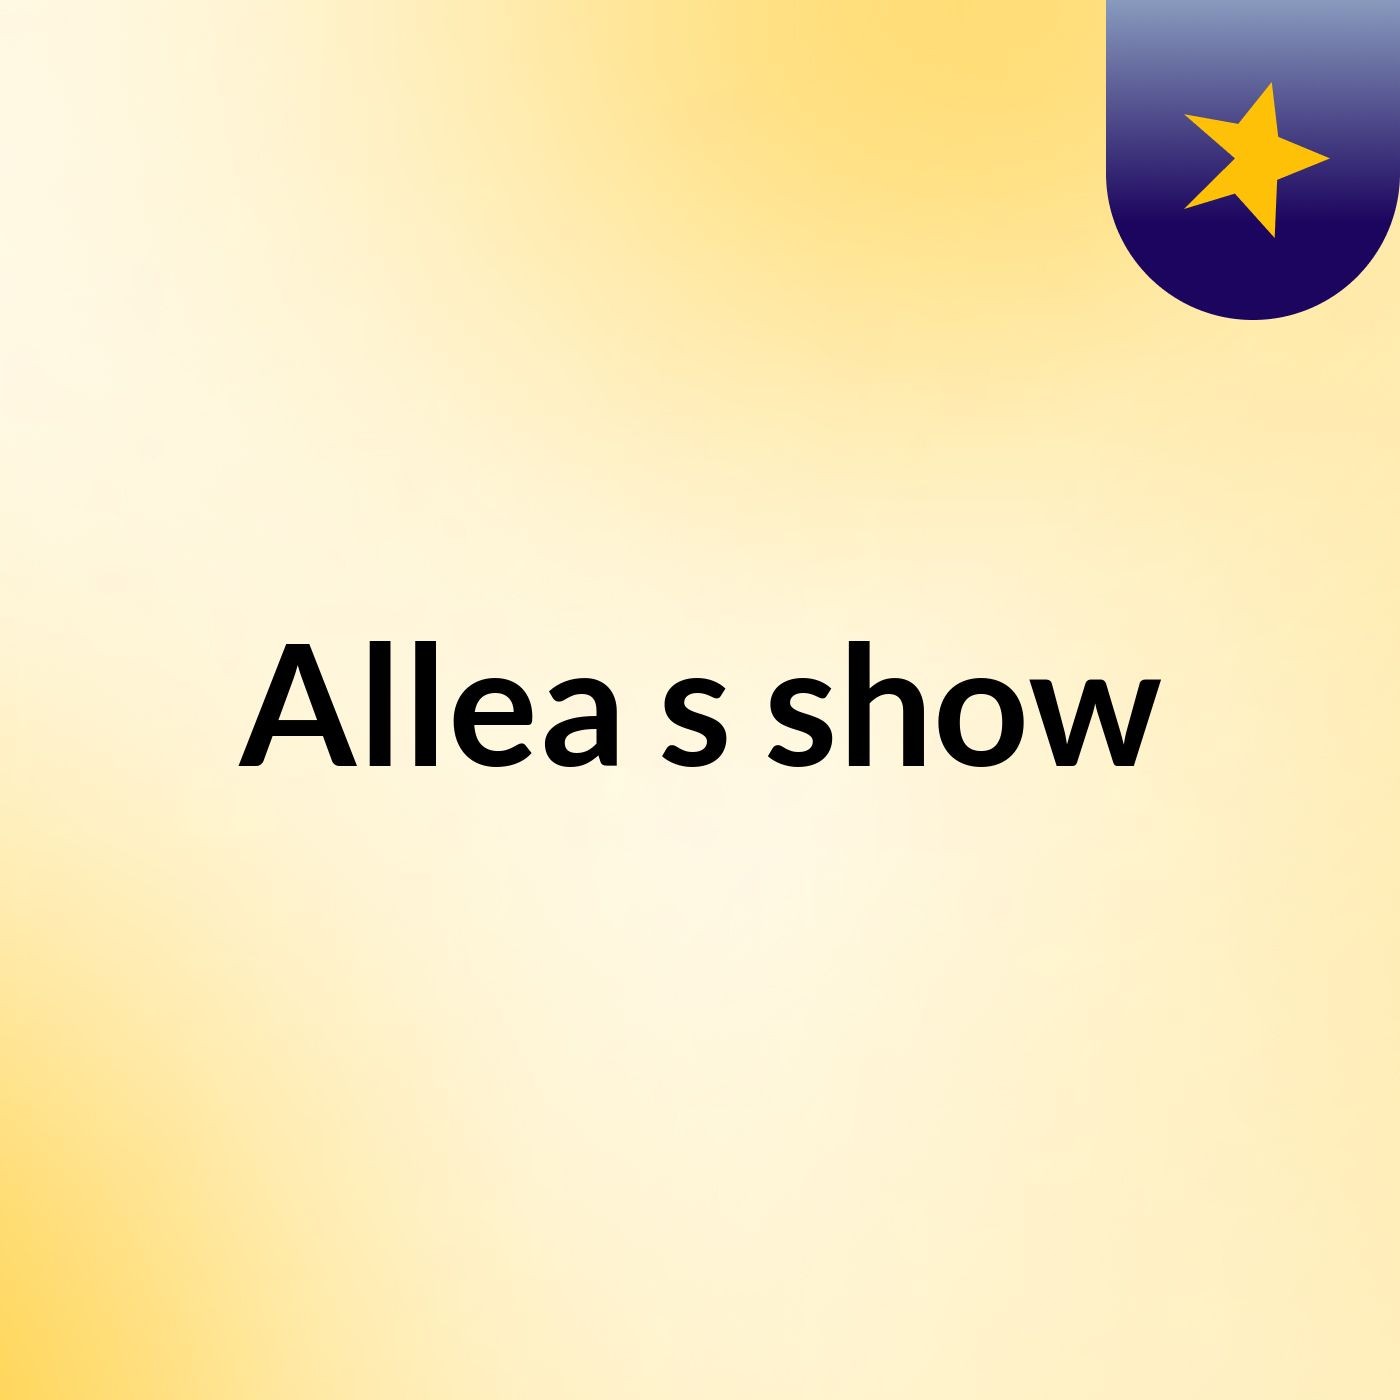 Allea's show